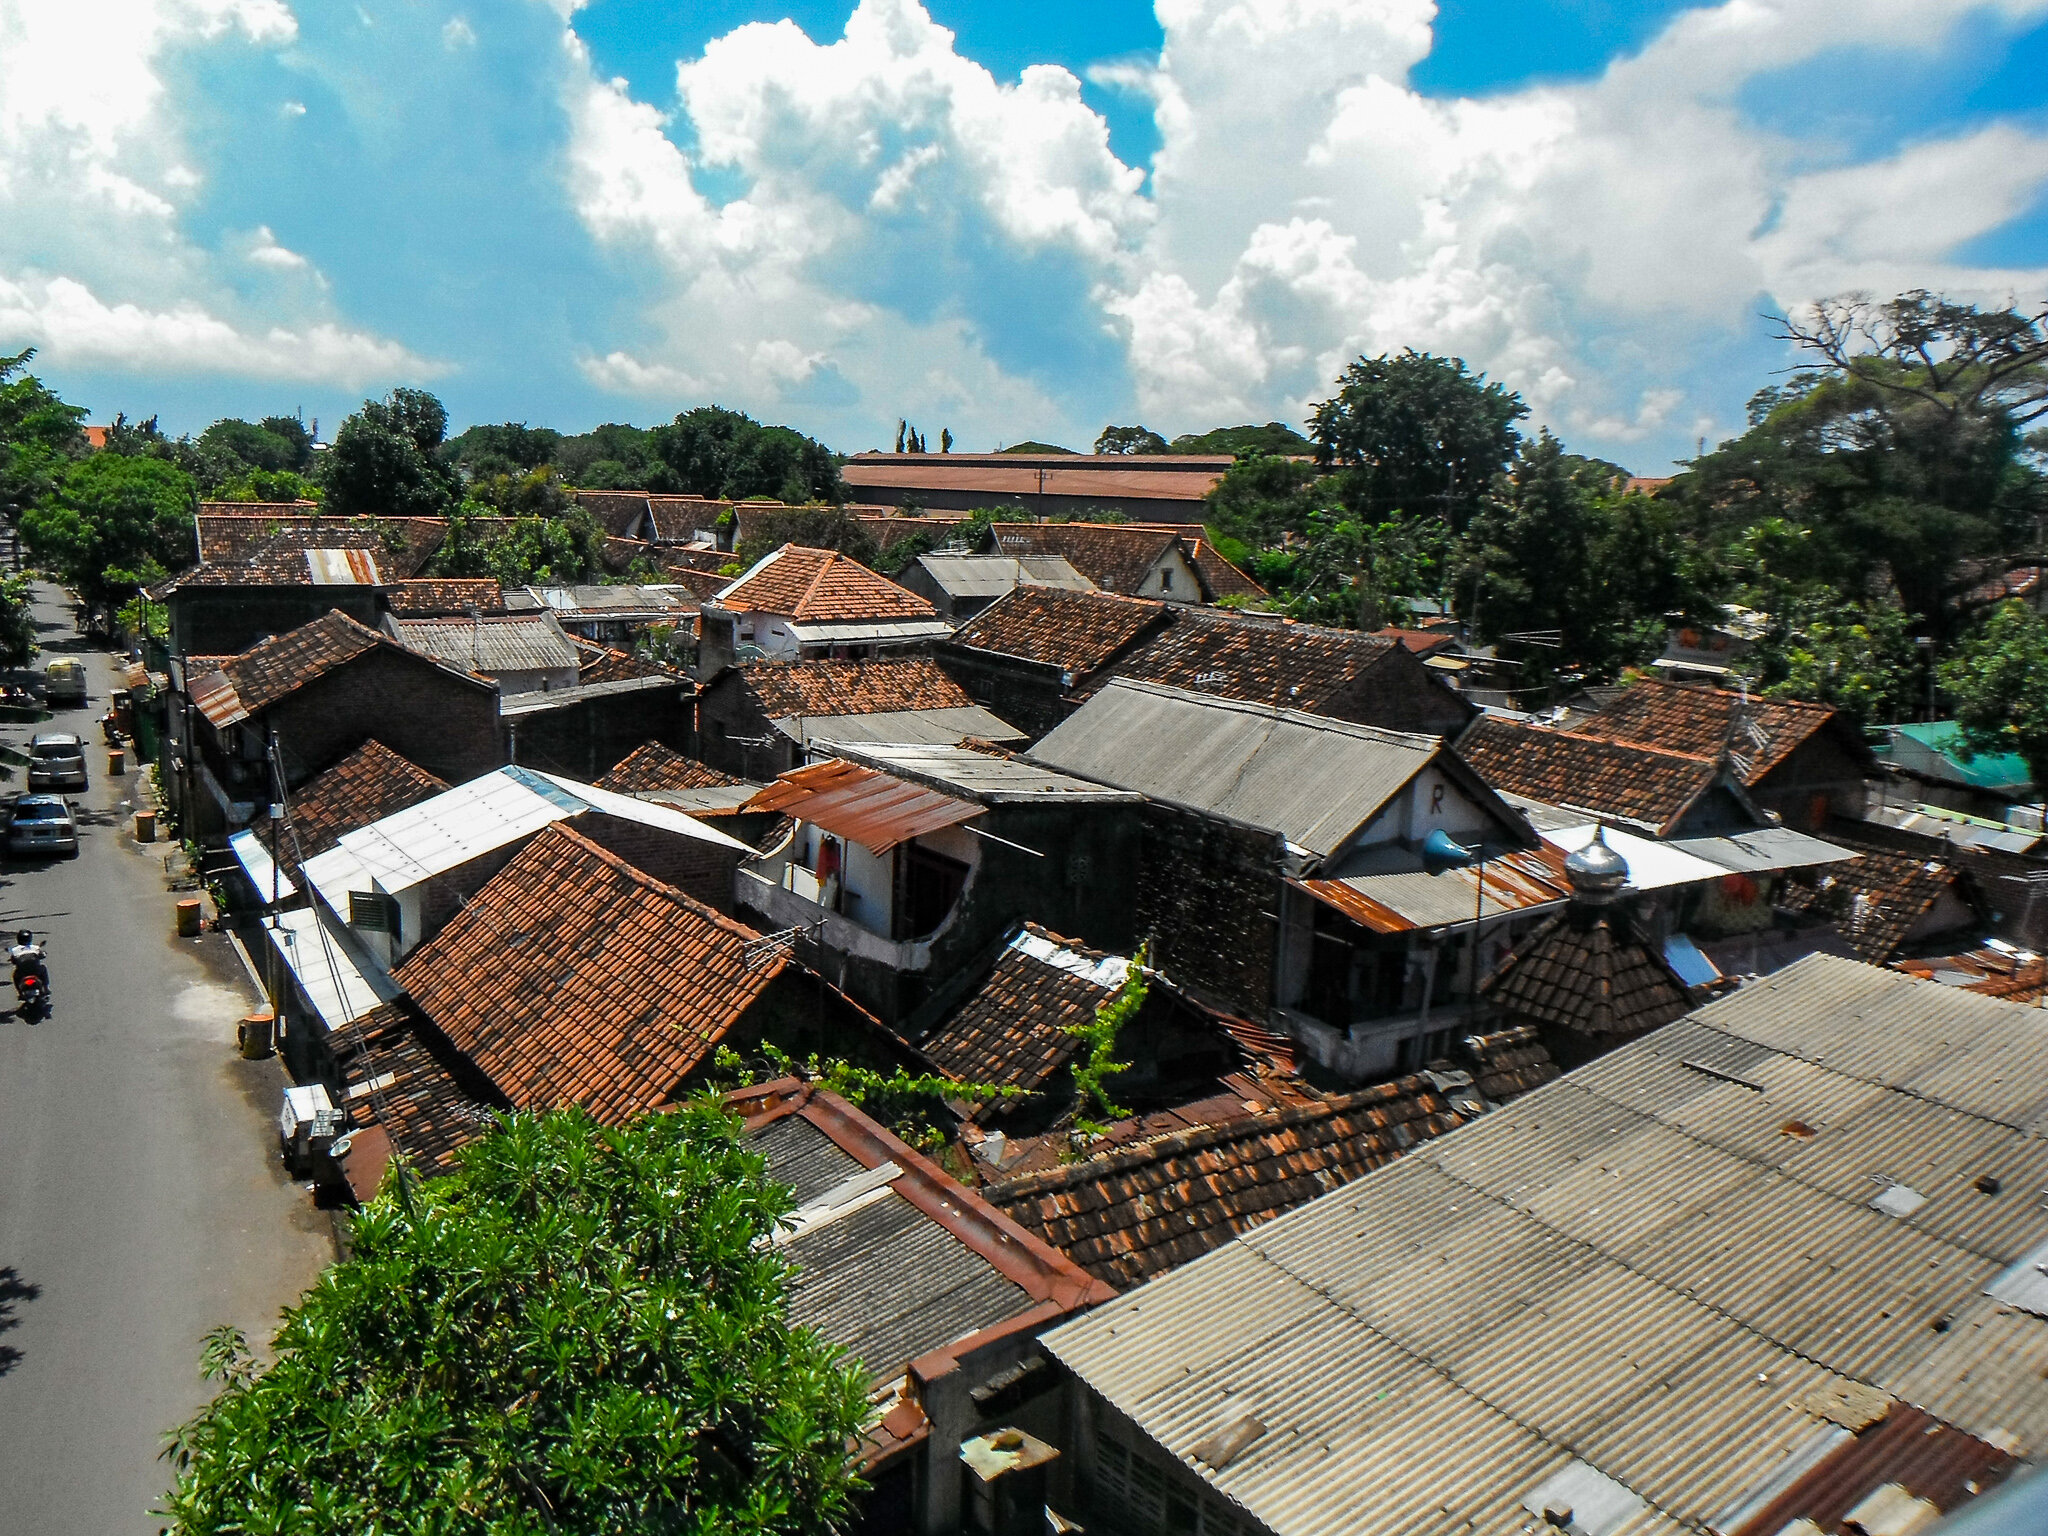  Slums in Surabaya 